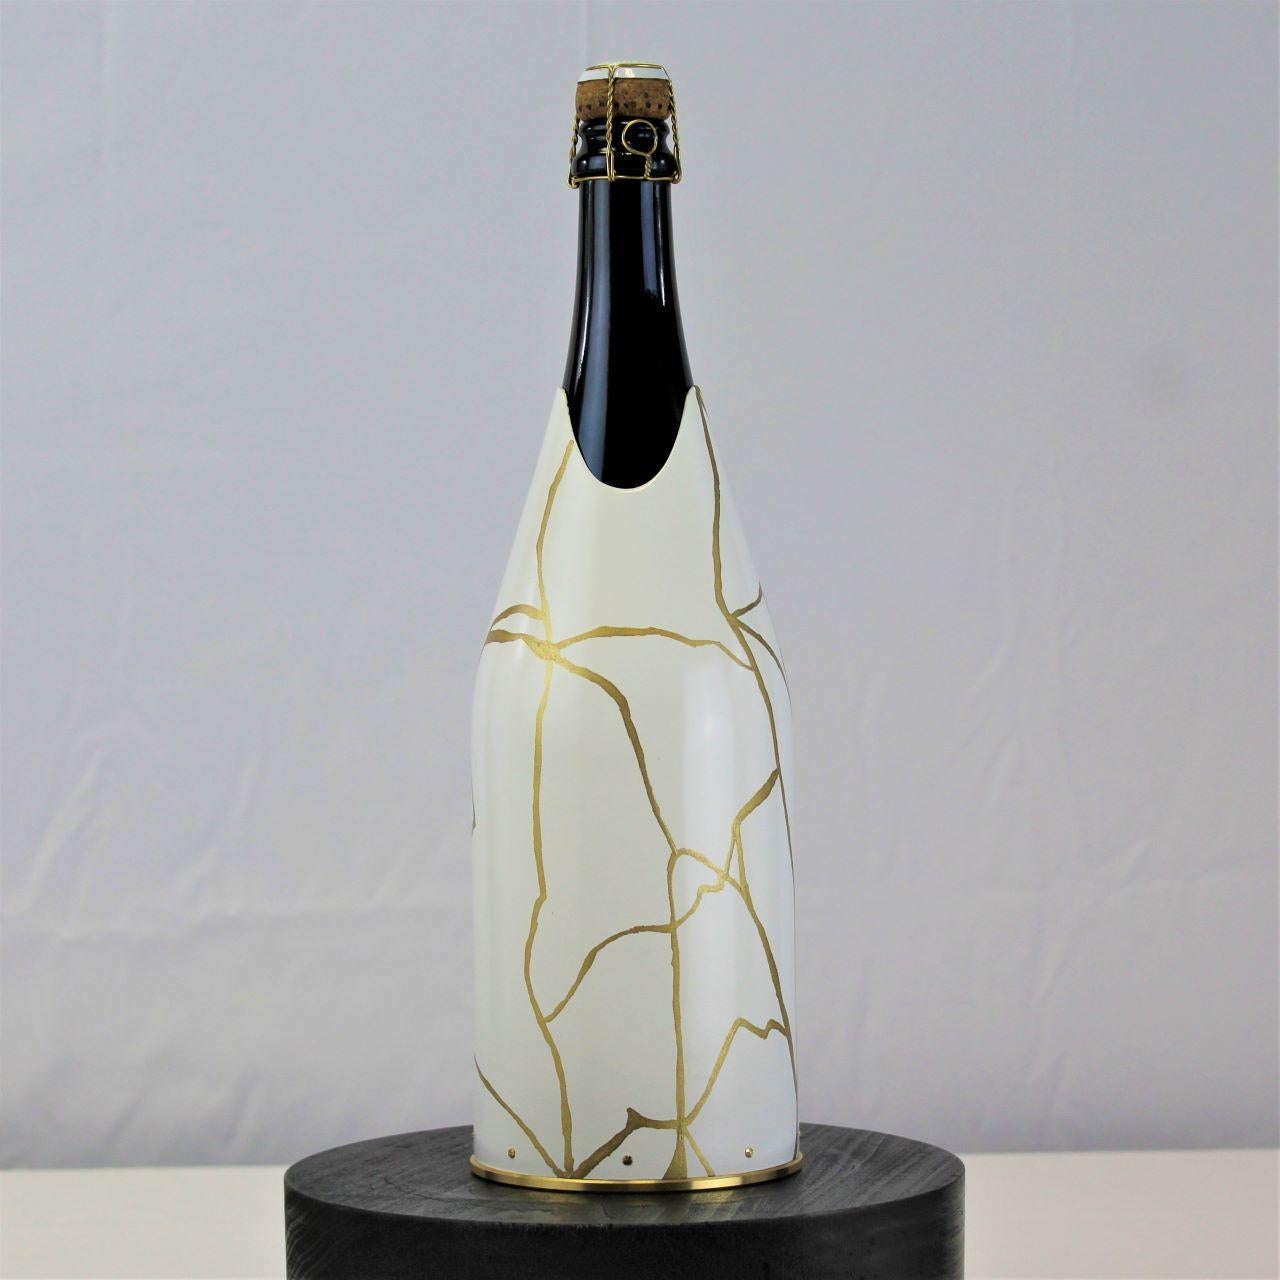 Ce K-Over champagne appartient à notre collection K-OVER Design.
L'artiste qui a réalisé cette pièce en argent pur 999/°° K-OVER s'est inspiré de la philosophie Kintsugi pour en faire une pièce de design totalement nouvelle. Selon la tradition